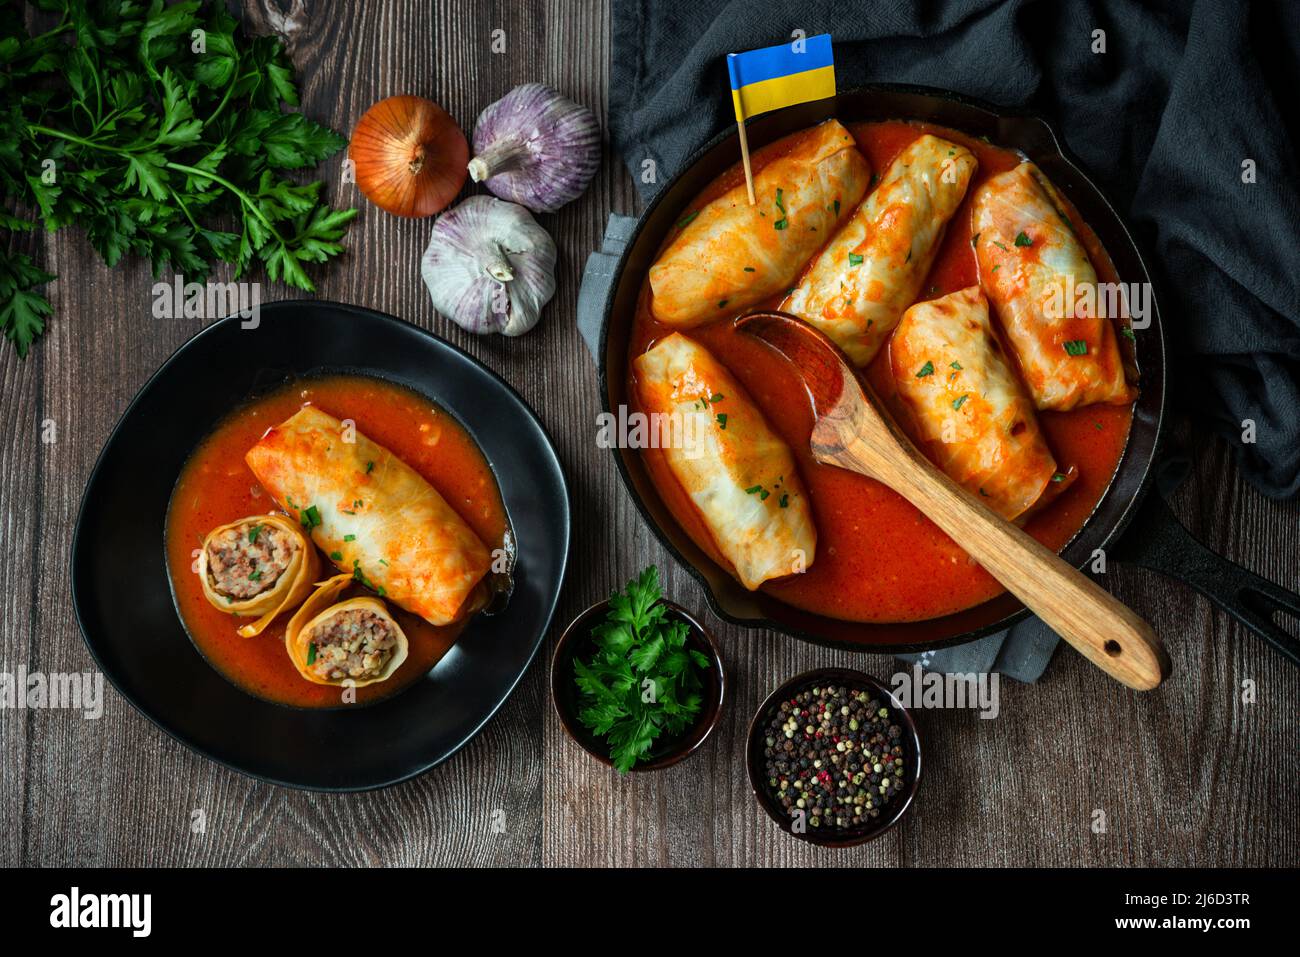 Authentisches traditionelles ukrainisches gefülltes Kohlgericht namens "Holubtsi" Stockfoto